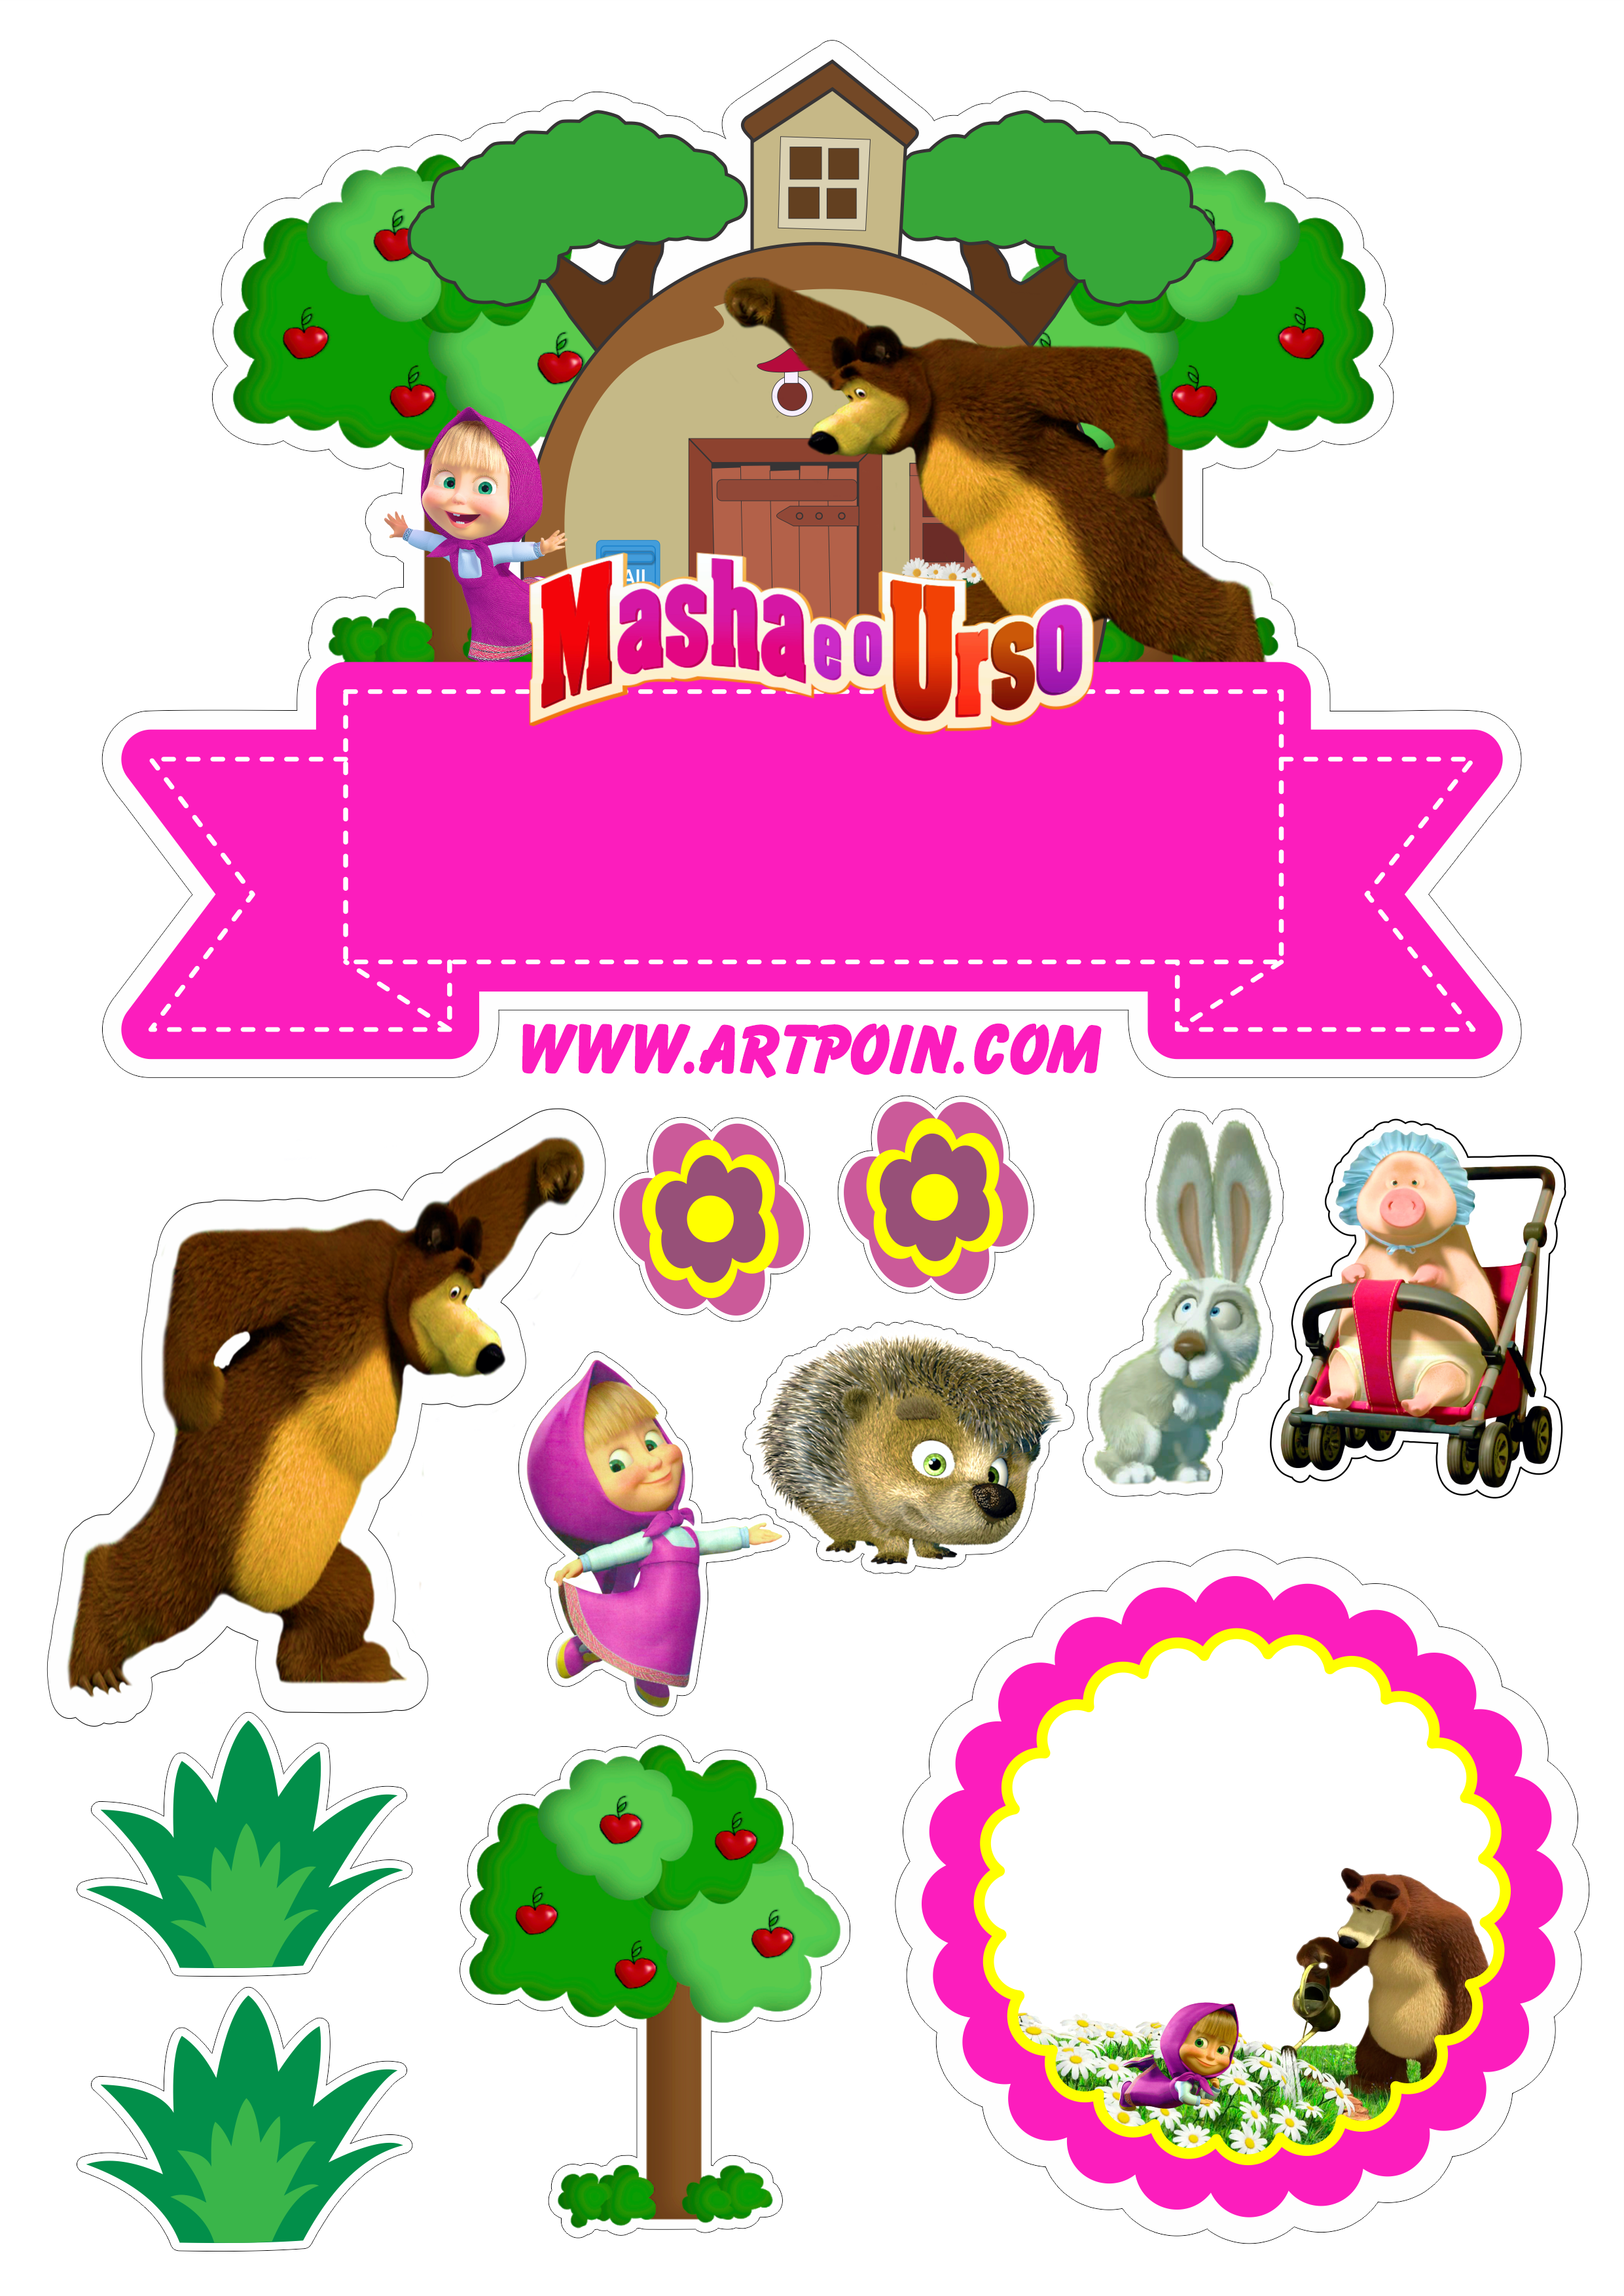 Topo de bolo para imprimir Masha e o Urso animais flores casinha no bosque feliz aniversário renda extra png